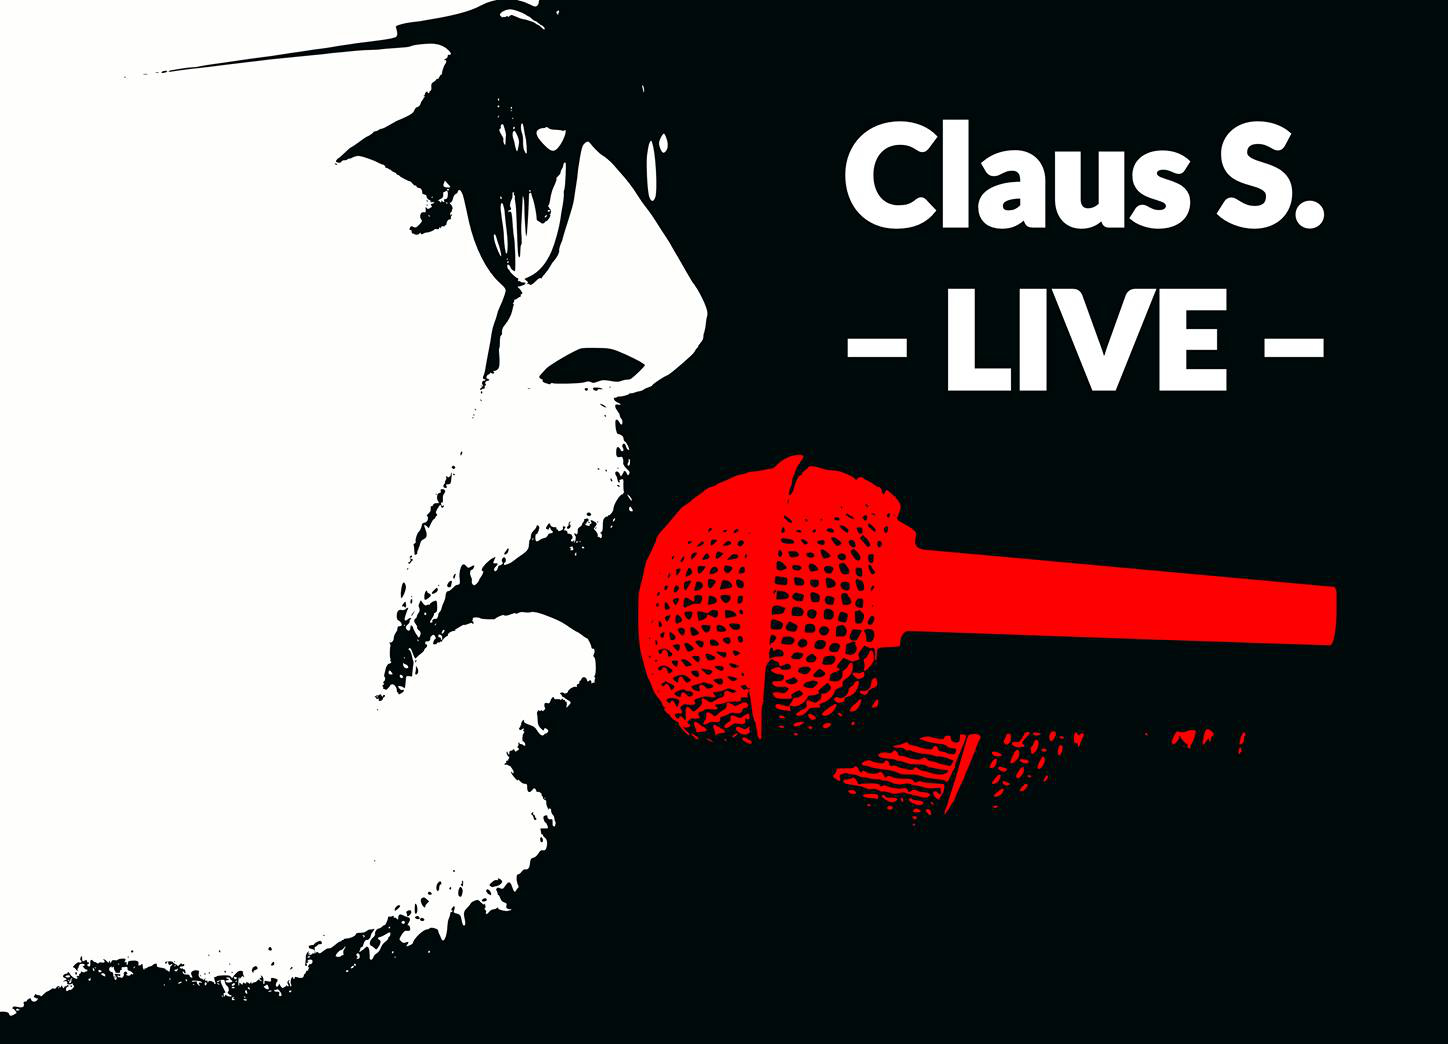  Claus S.